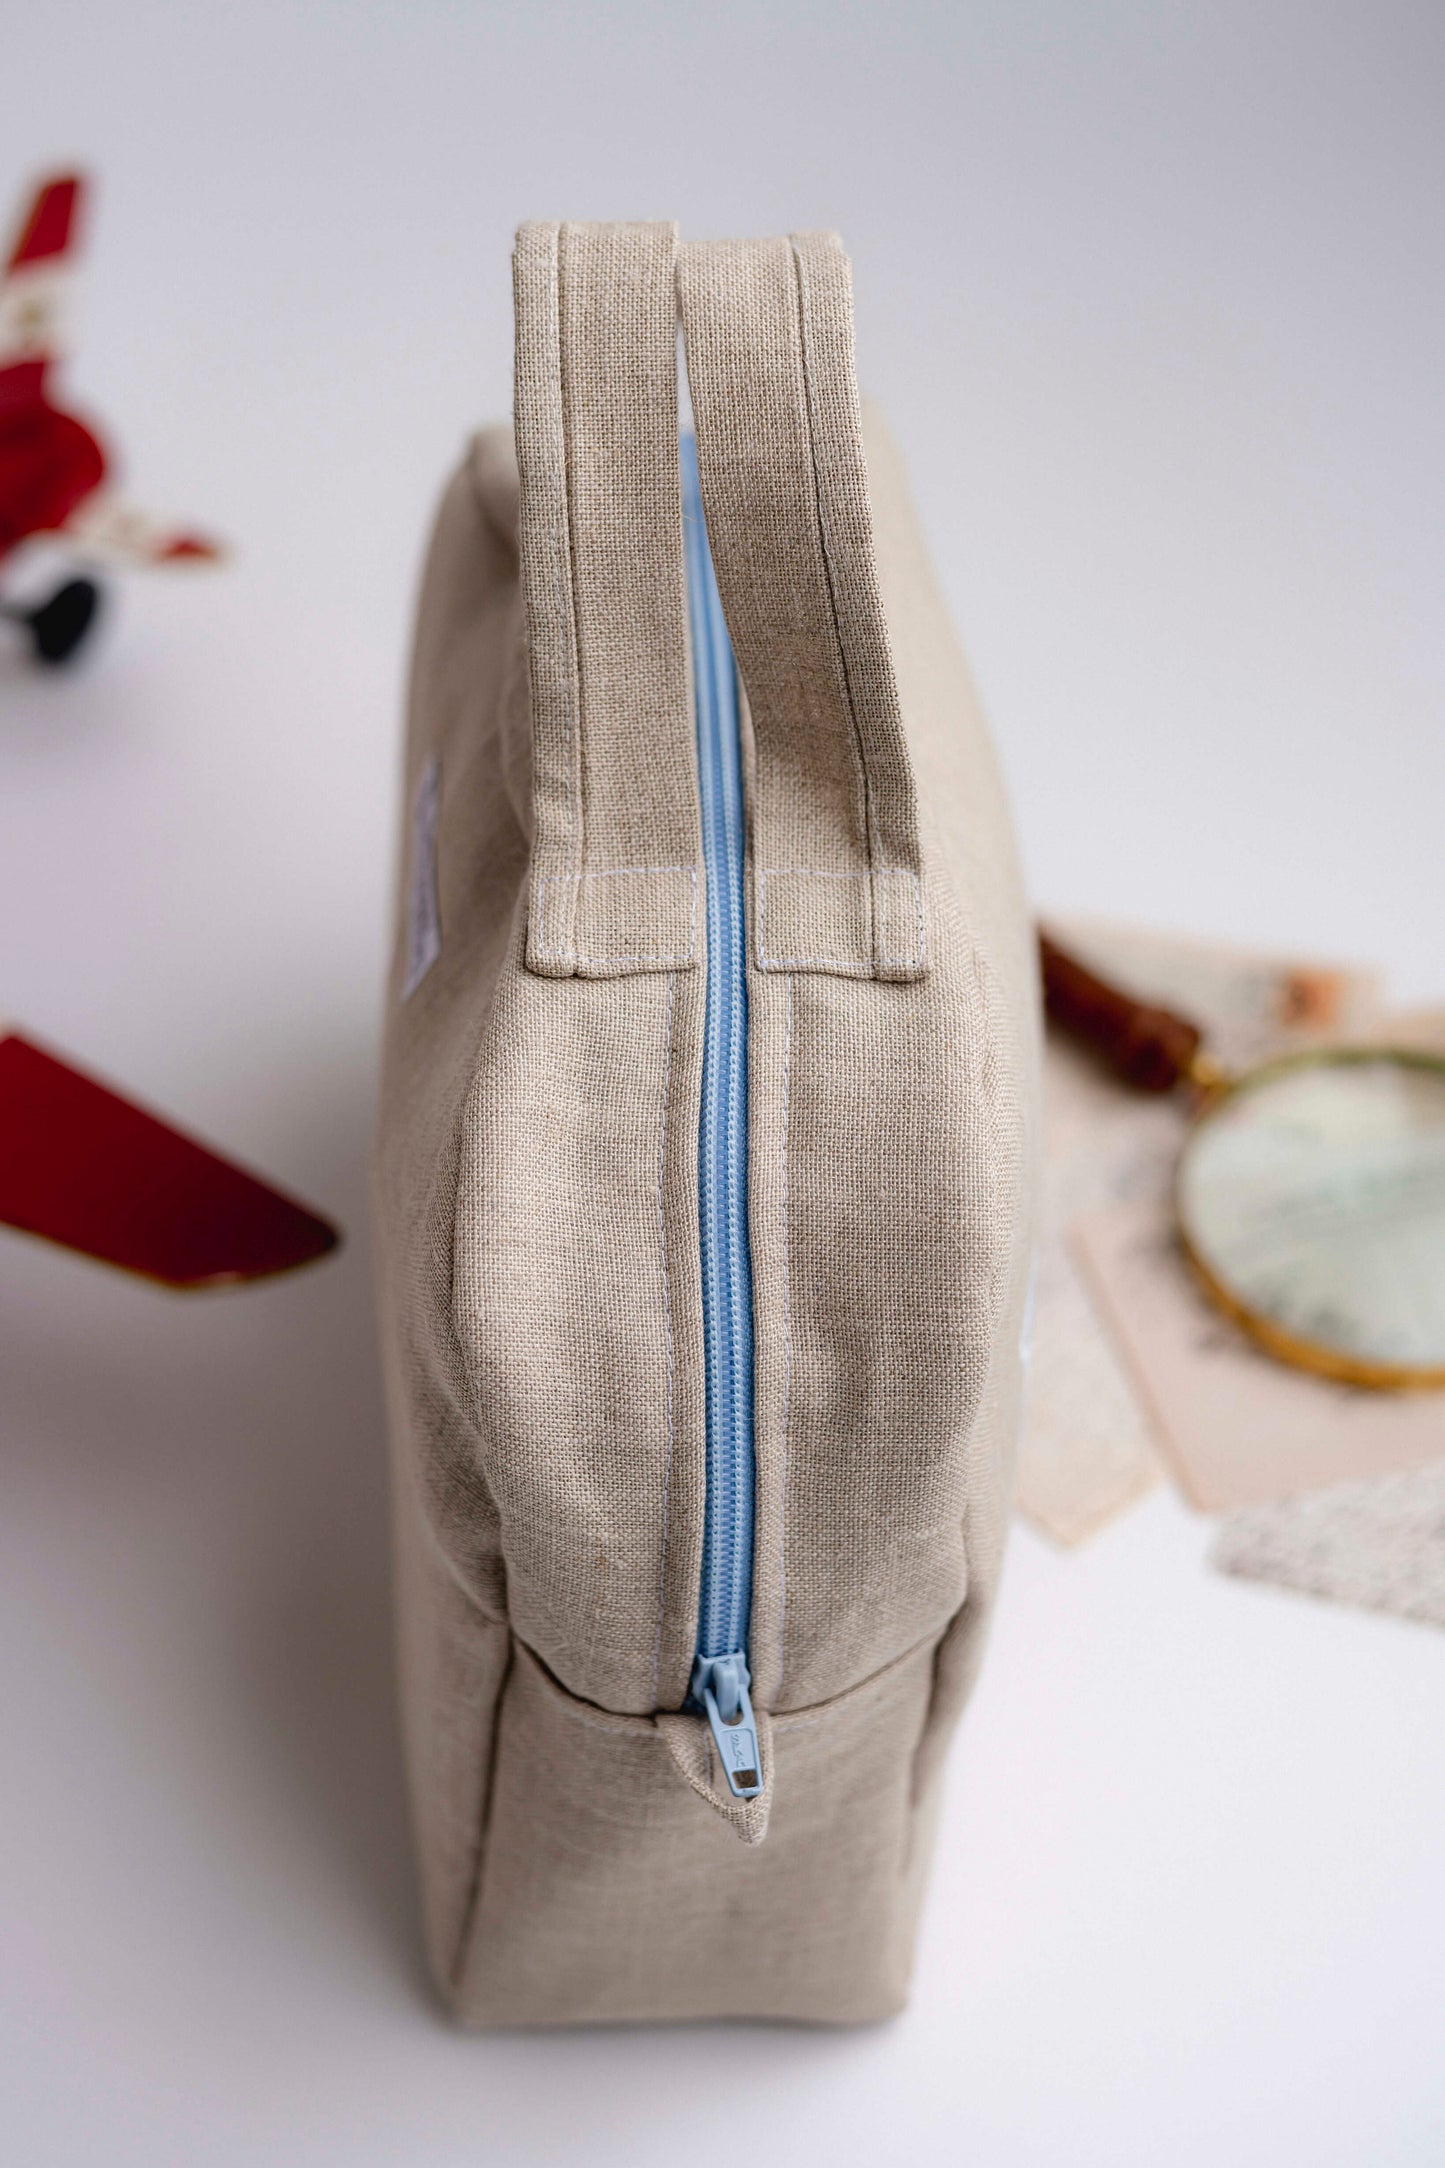 Hellblau besticktes Baby-Survival Kit aus reinem Leinen | Multifunktionstasche für Reisen und Wandern | Embroidery store di Letizia